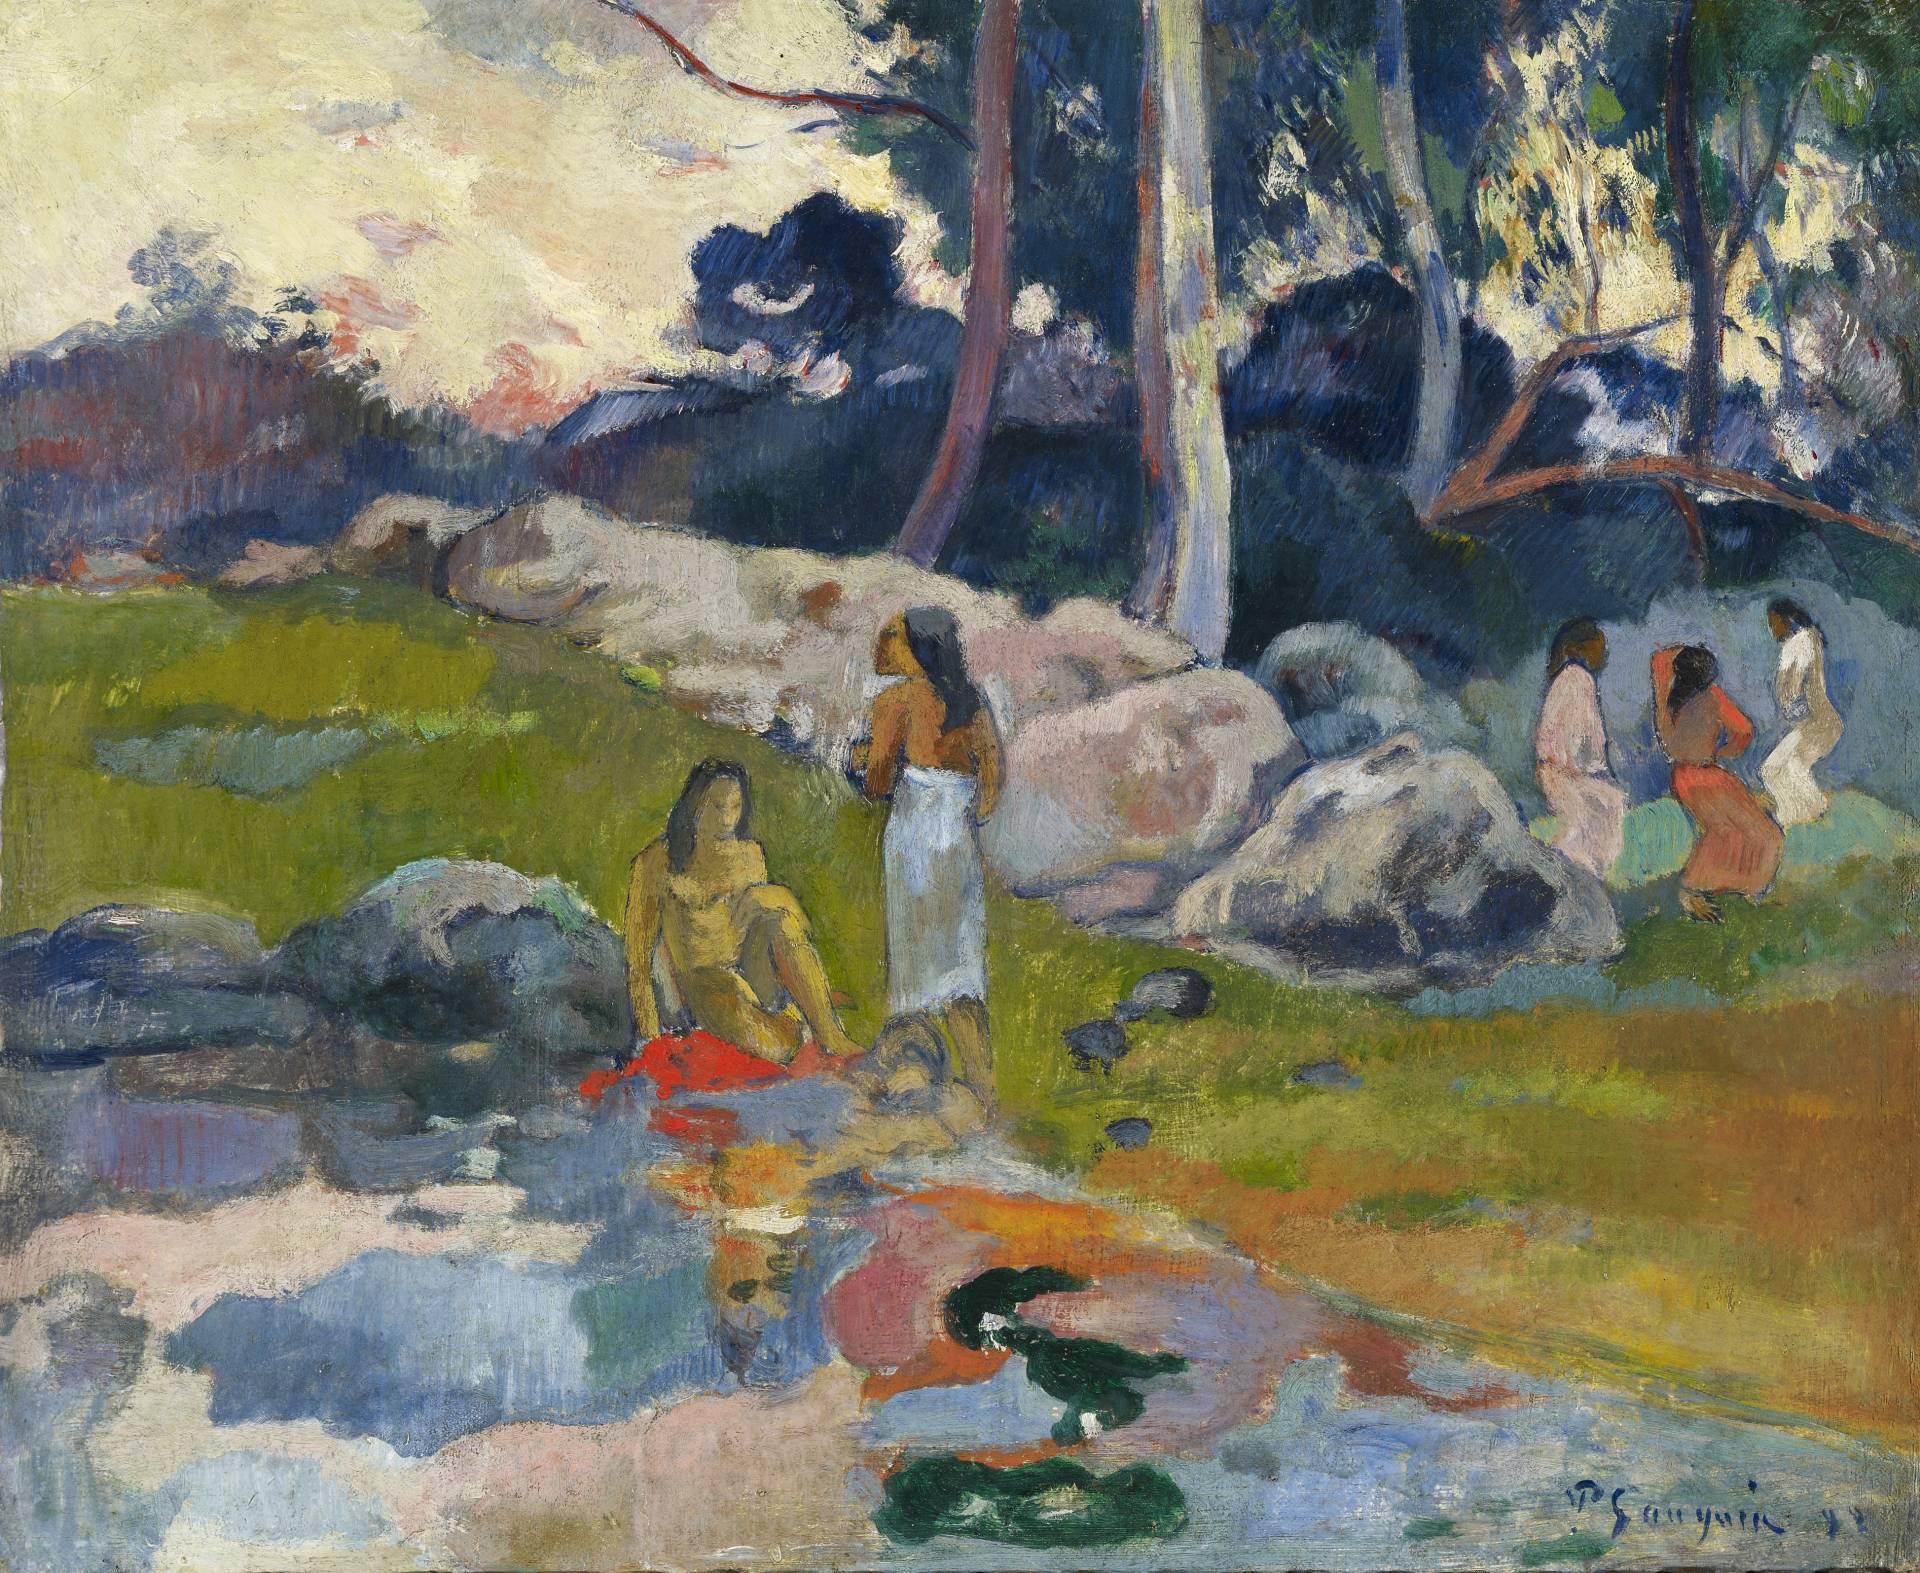 'Mujeres en la ribera del río', de Paul Gauguin (1892). Óleo sobre tela. Colección Alicia Koplowitz - Grupo Omega Capital.